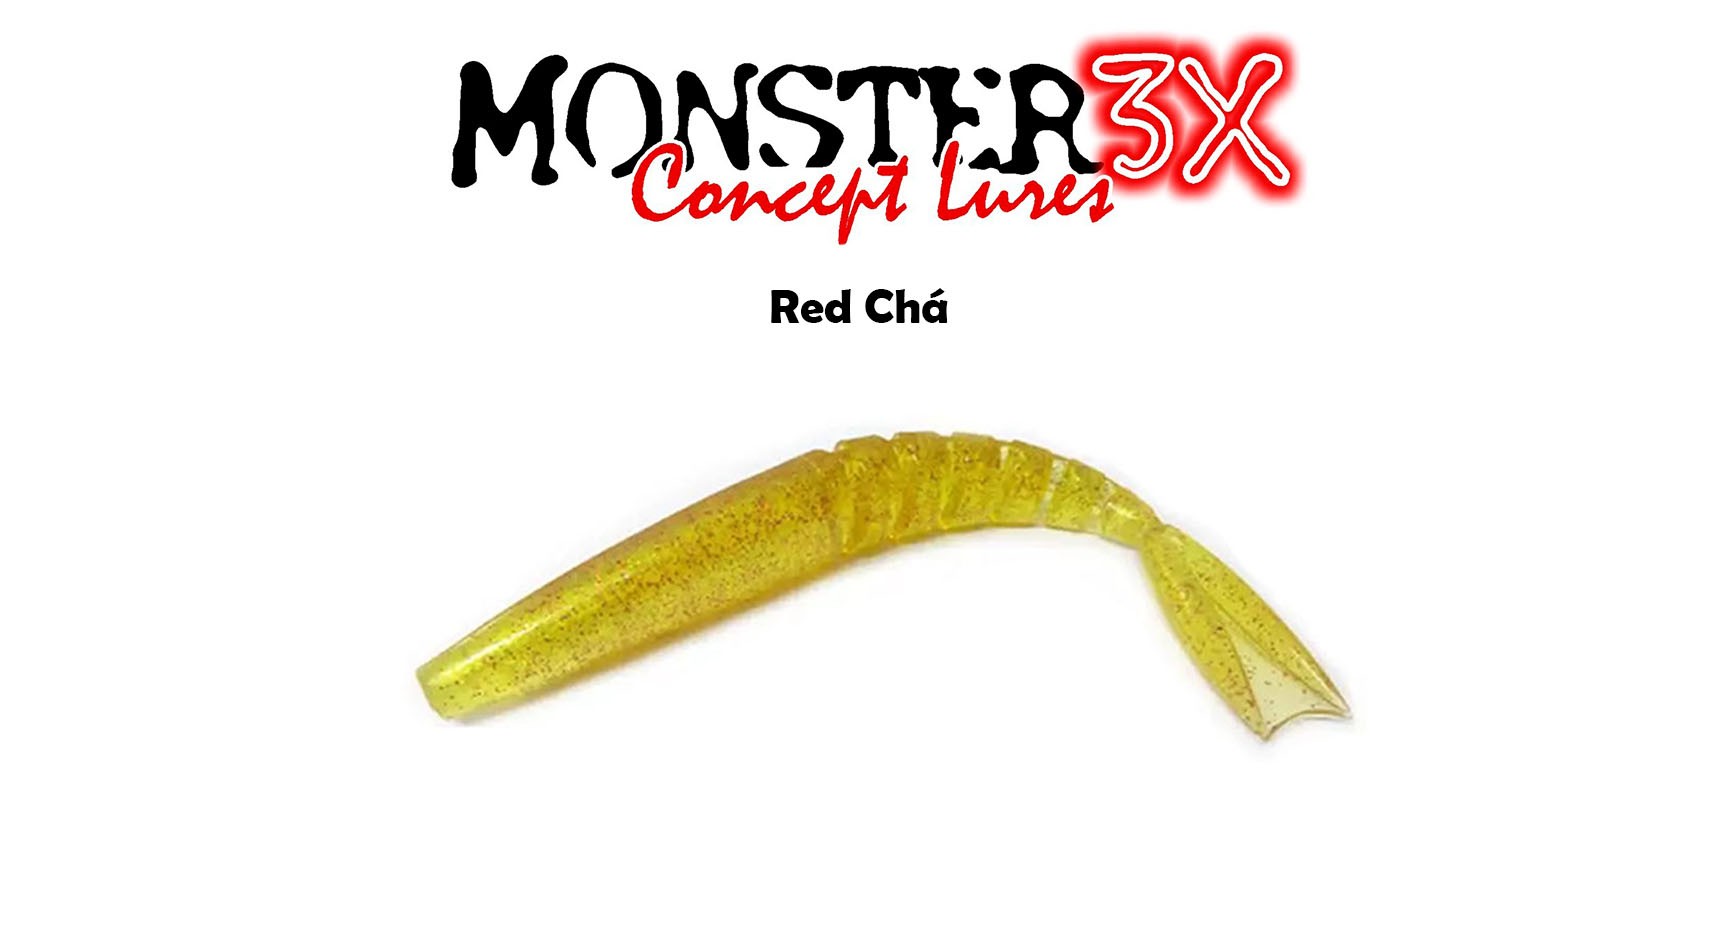 Isca Artificial Soft Monster 3X X-Swim (22 cm) 2 Peças - Várias Cores